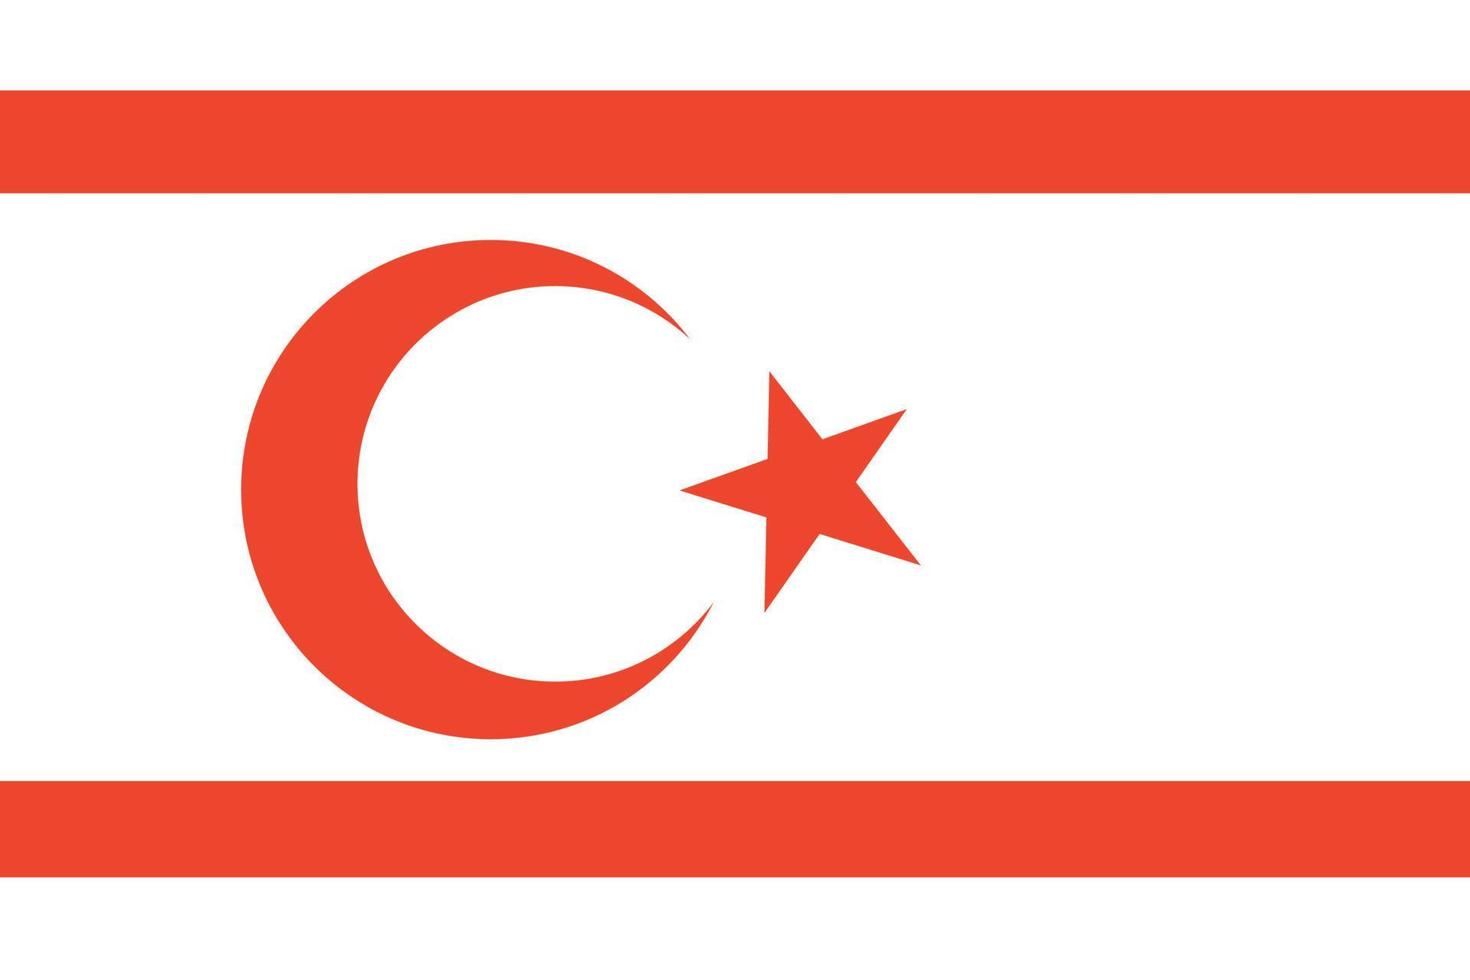 Turks republiek van noordelijk Cyprus vlag. correct kleuren en proportie. vector